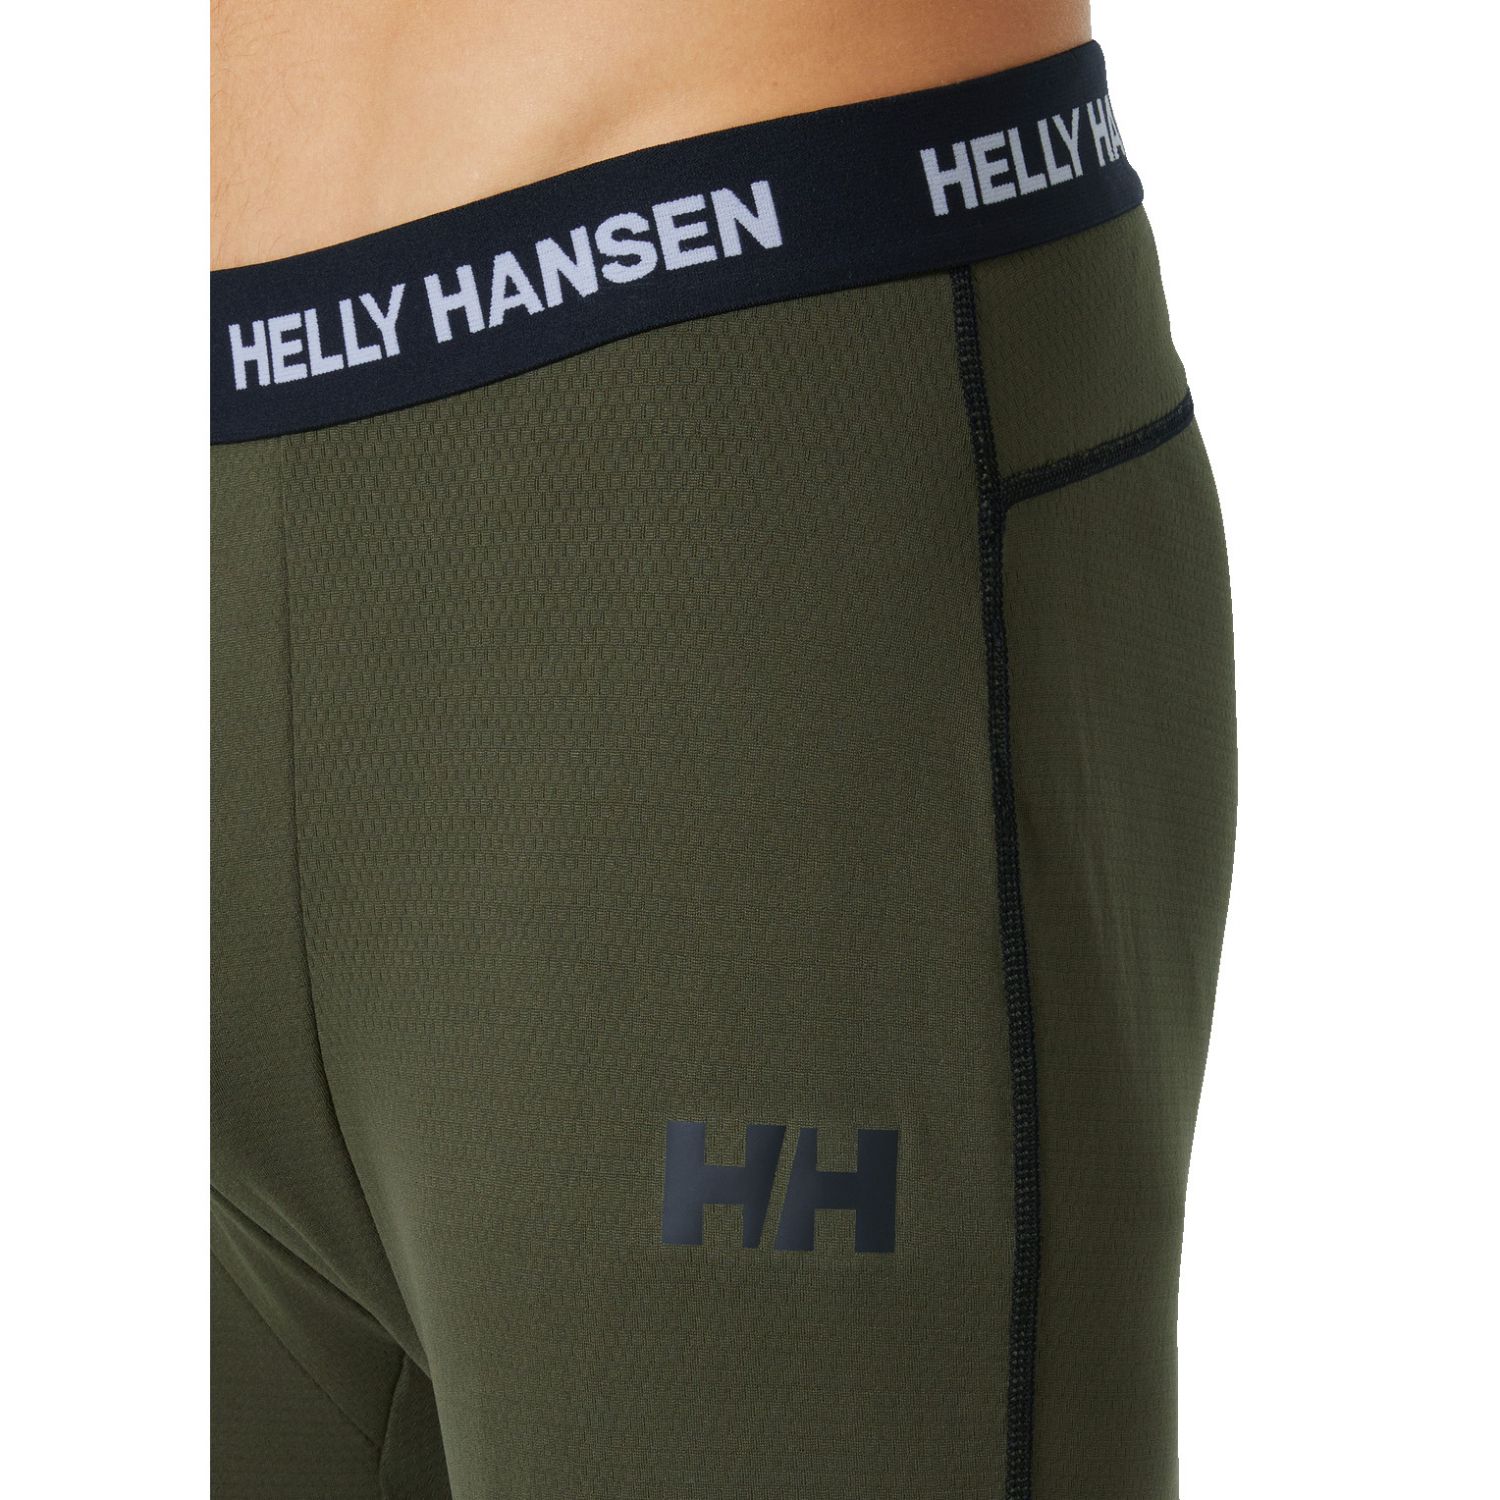 Helly Hansen Lifa Active Pantalon, homme, vert